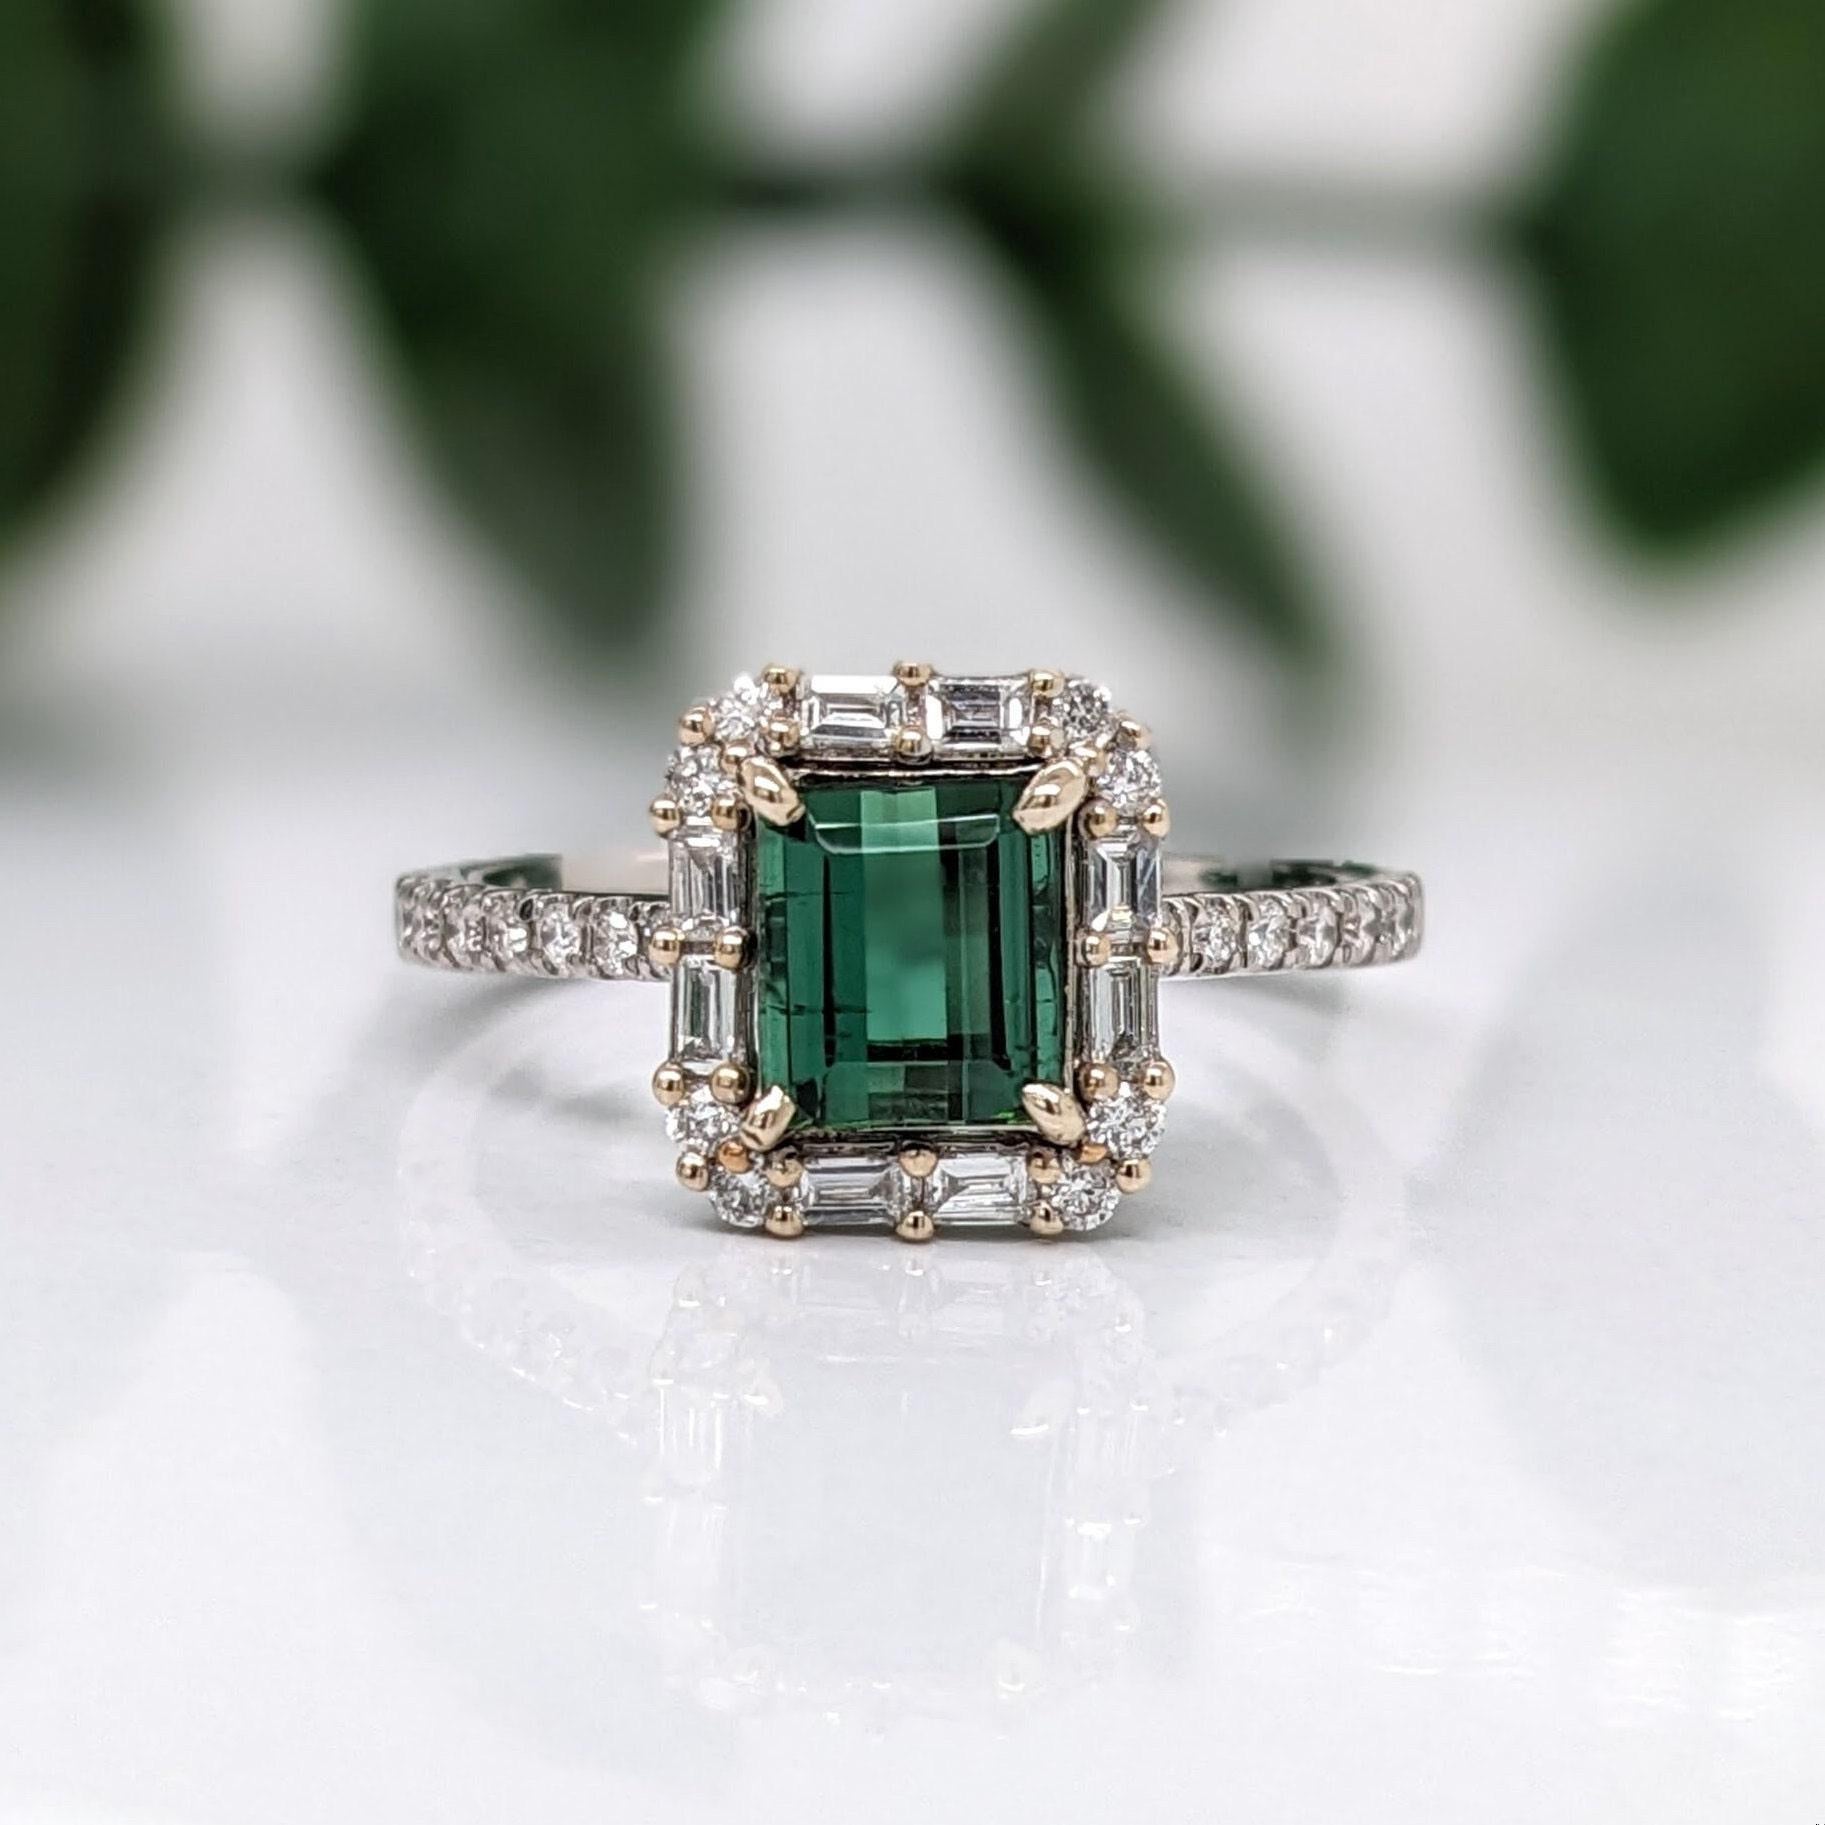 Dieser wunderschöne Art-Déco-Ring zeigt einen leuchtend grünen Turmalin, der in 14 Karat Weißgold gefasst ist und mit runden und Baguette-Diamanten akzentuiert ist. Ein wunderschöner tiefgrüner Edelstein, der in Farbe und Reinheit mit den feinsten